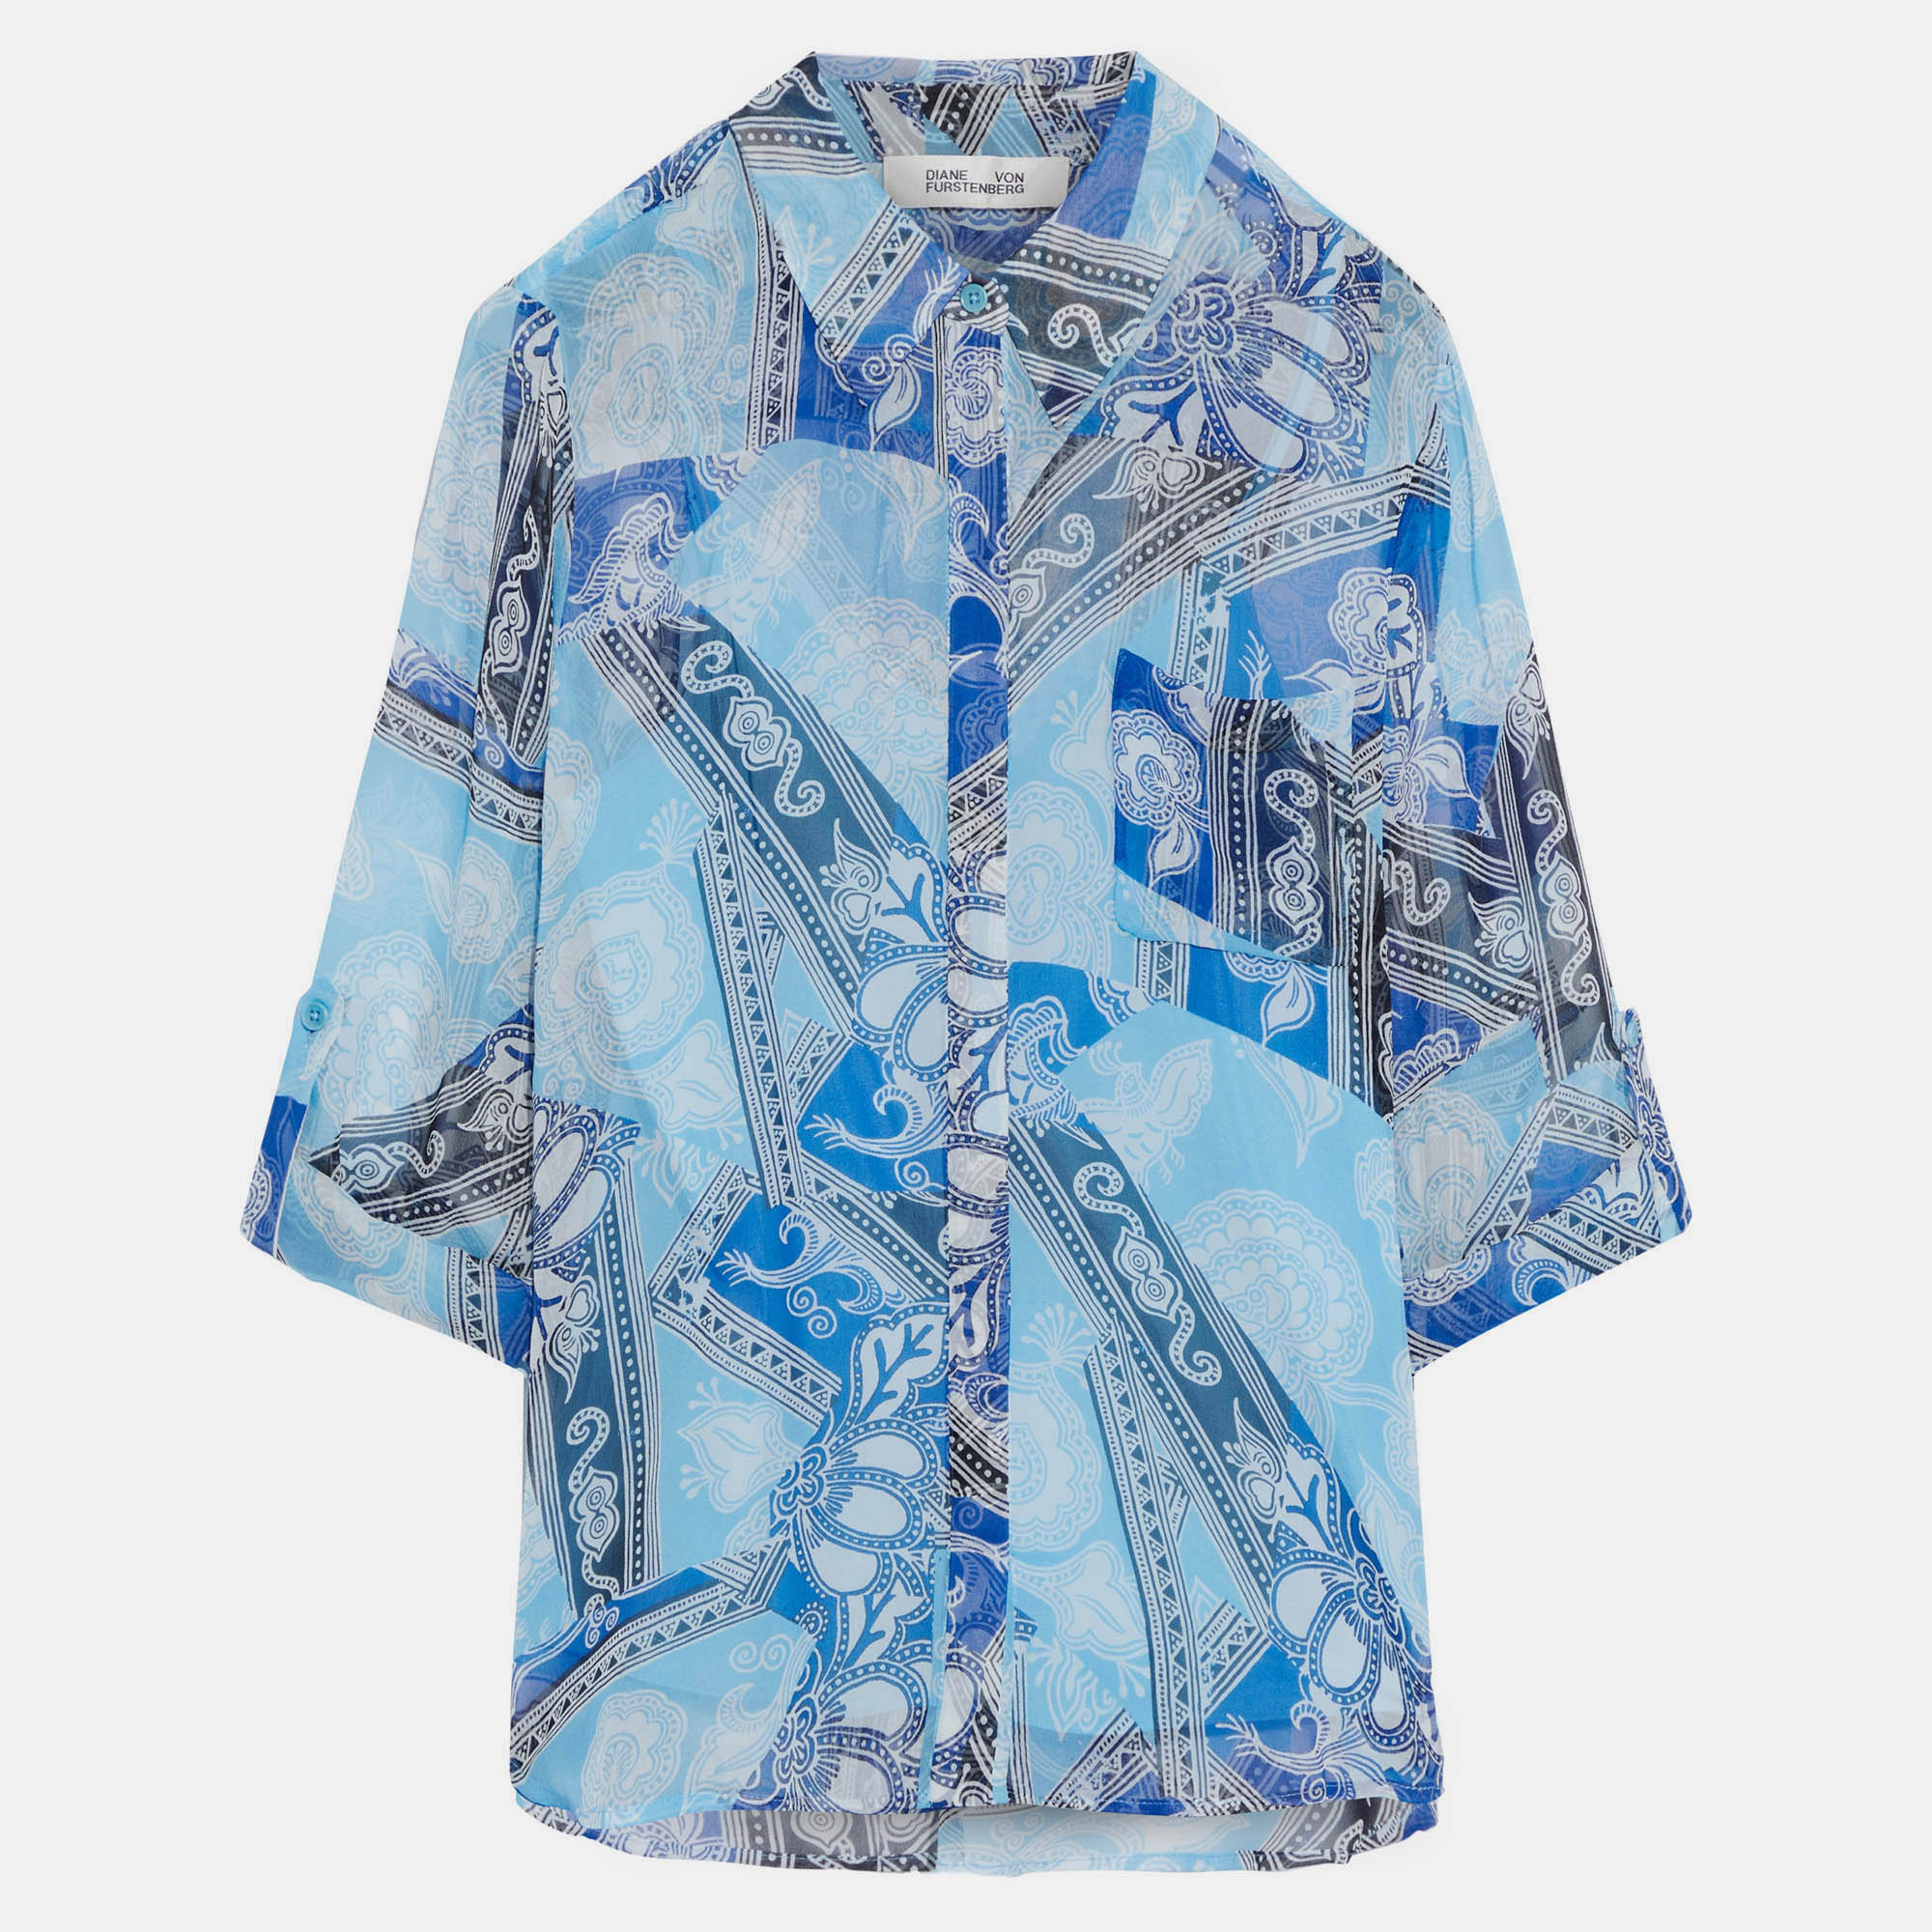 Diane von furstenberg silk long sleeved shirt xs